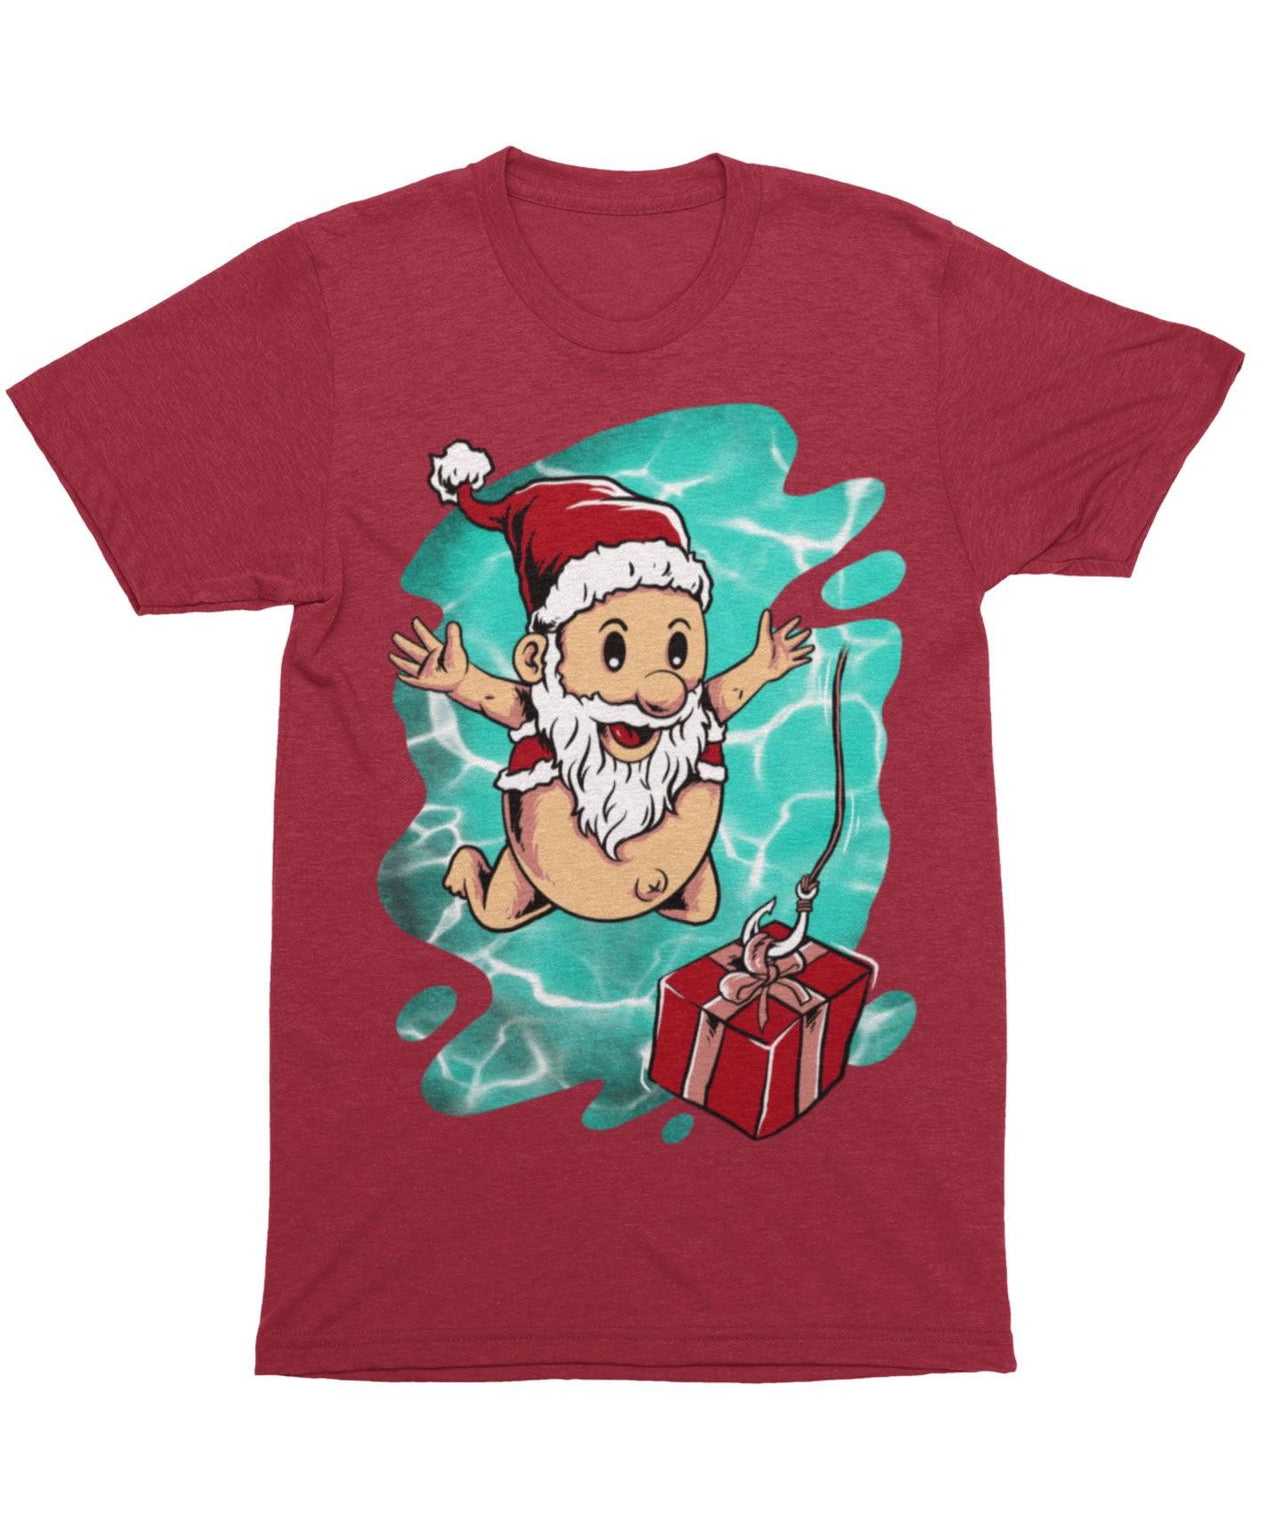 Deep Surprise For Baby Santa, Unisex Christmas T-Shirt For Men 8Ball